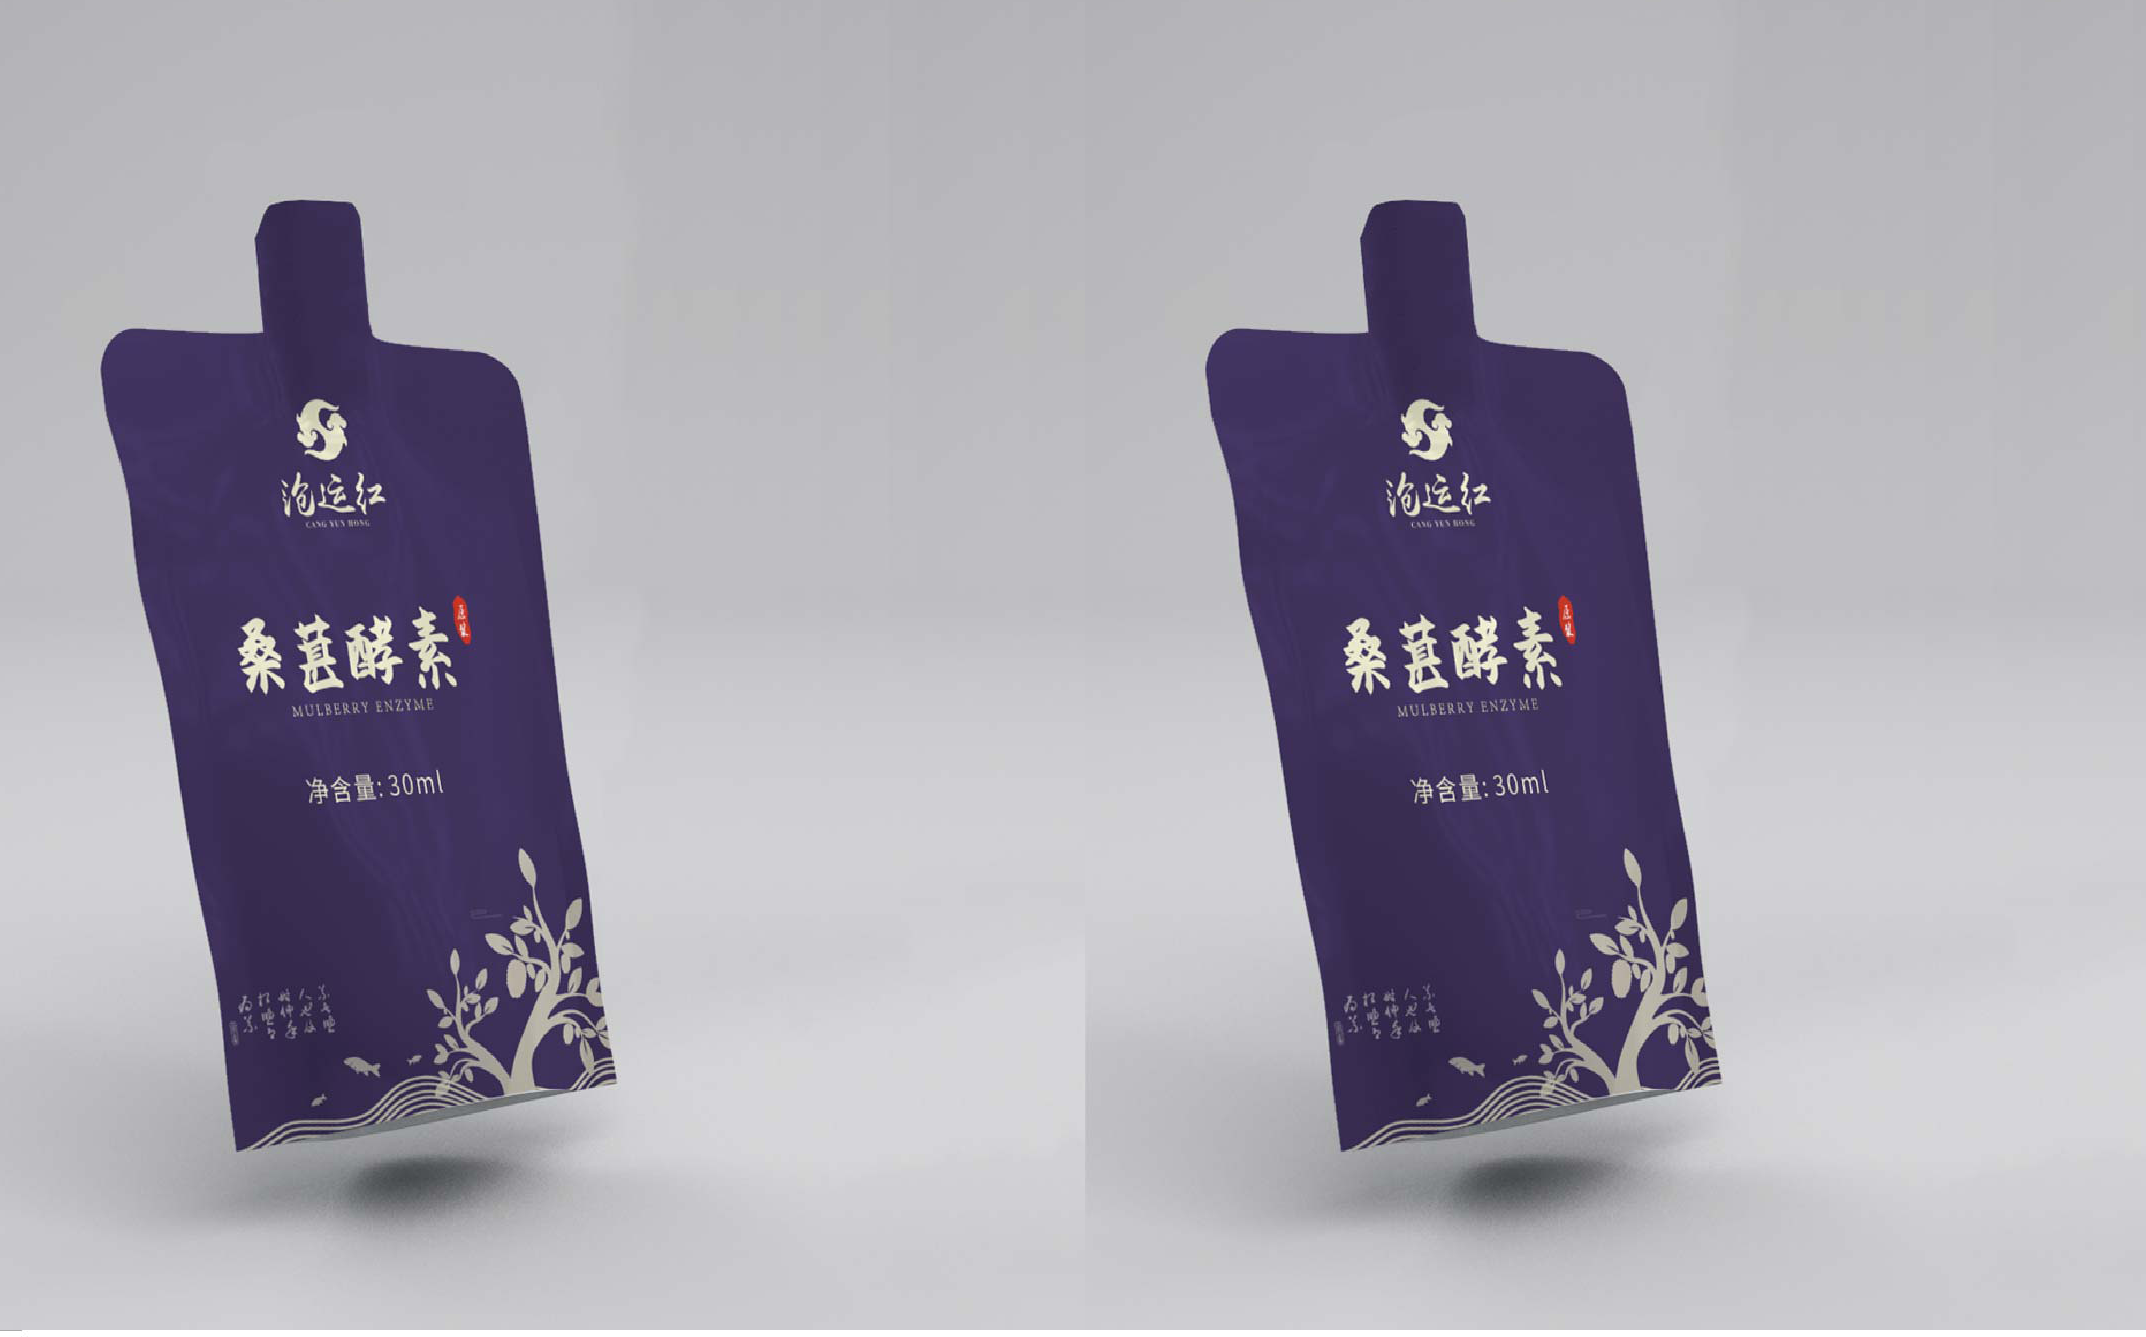 热门南京礼盒包装设计公司案例TOP3名单发布 